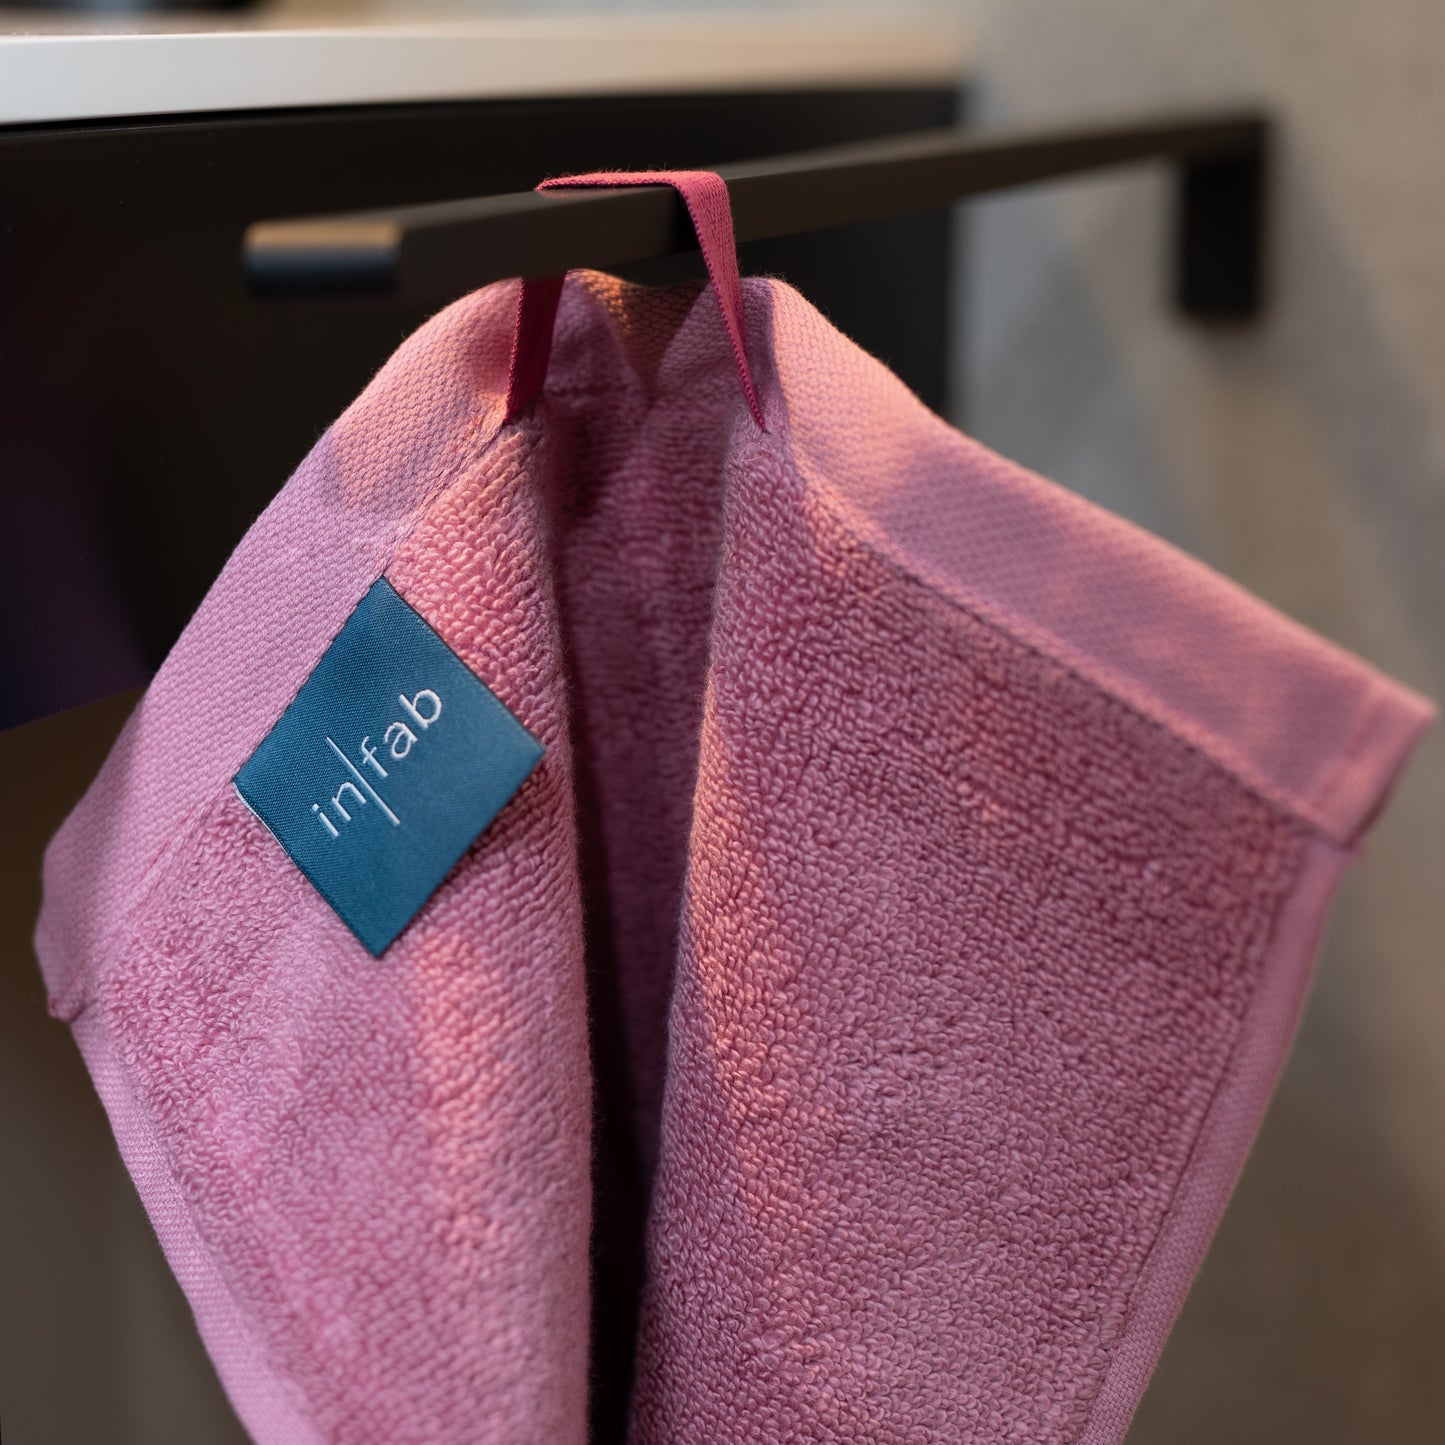 Handtuch Waha aus Baumwolle in verschiedenen Größen | pastel rose